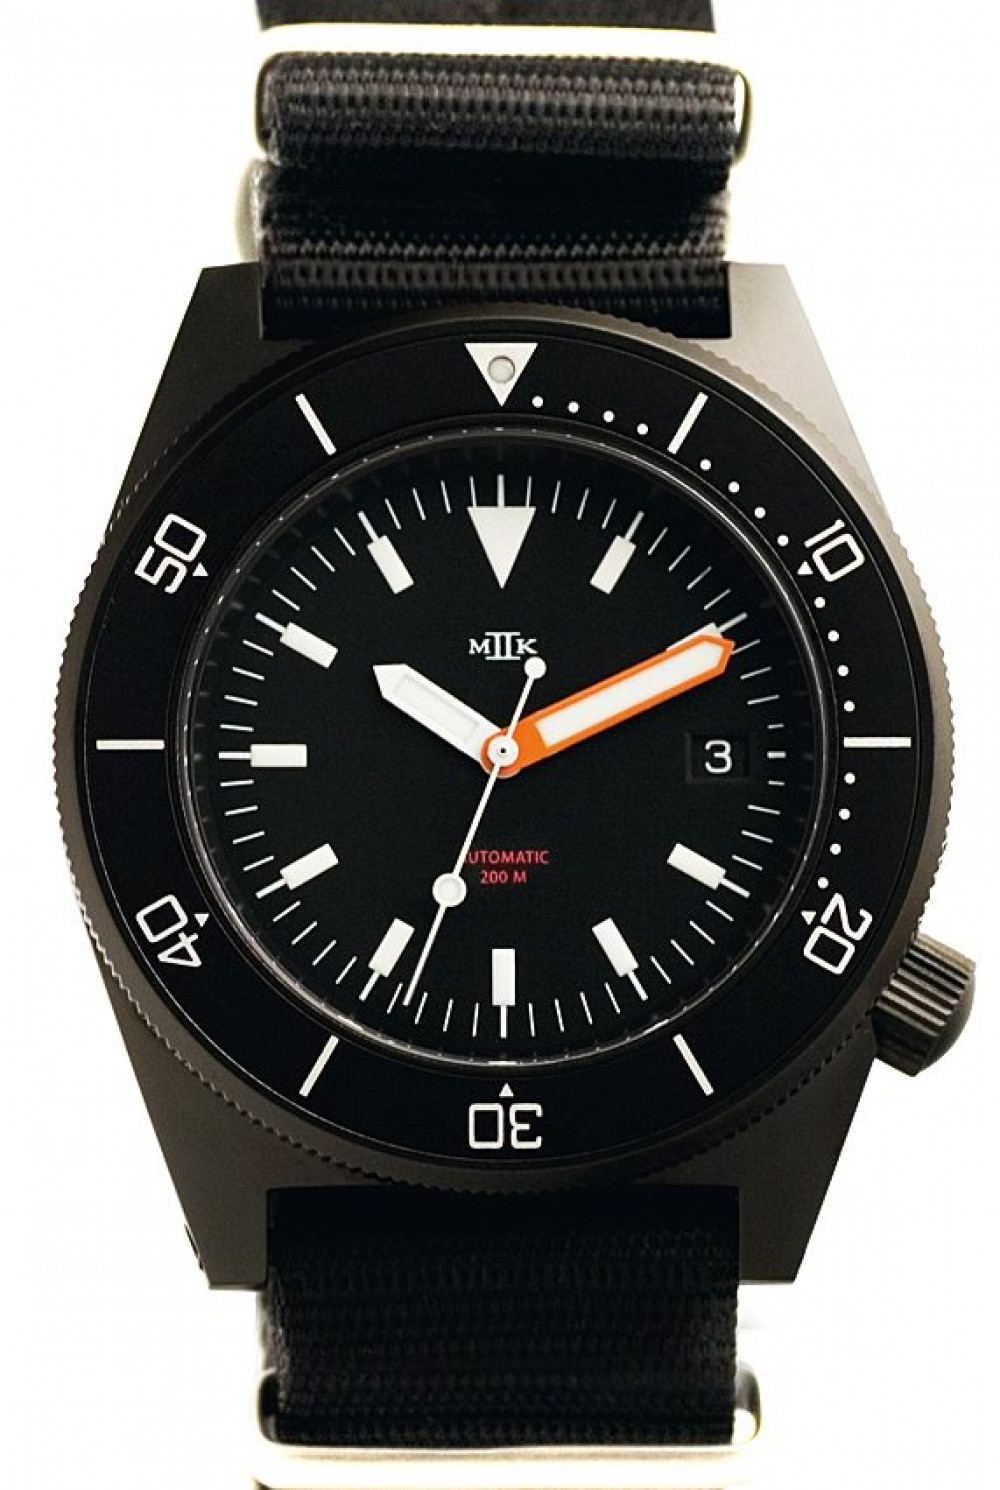 Zegarek firmy MKII, model Sea Fighter